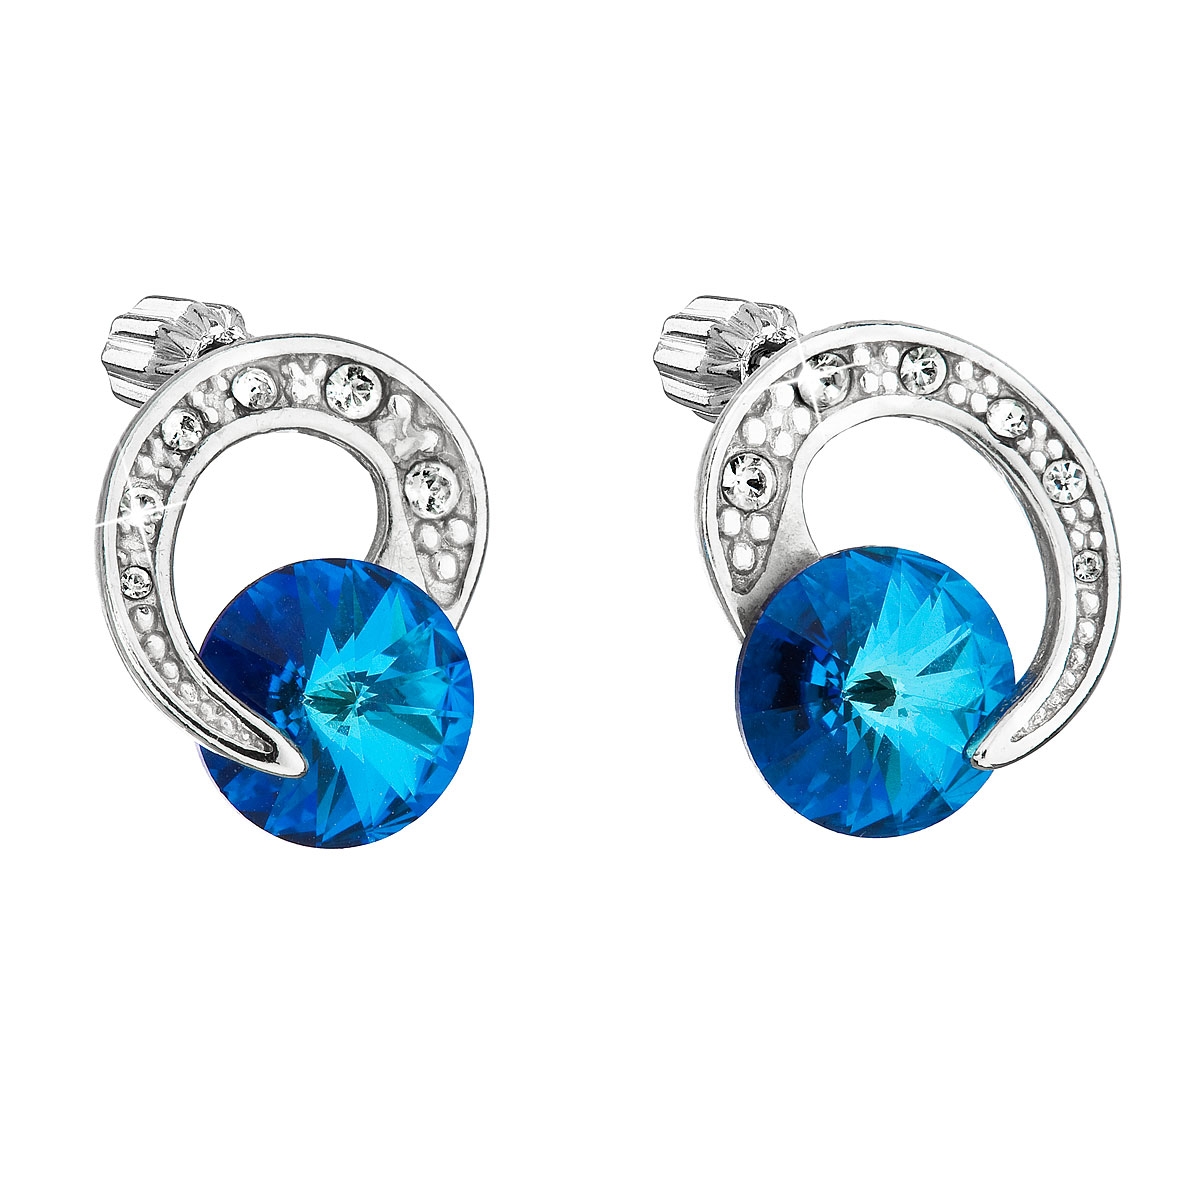 Strieborné náušnice s kamienkami Crystals from Swarovski ® Bermuda Blue